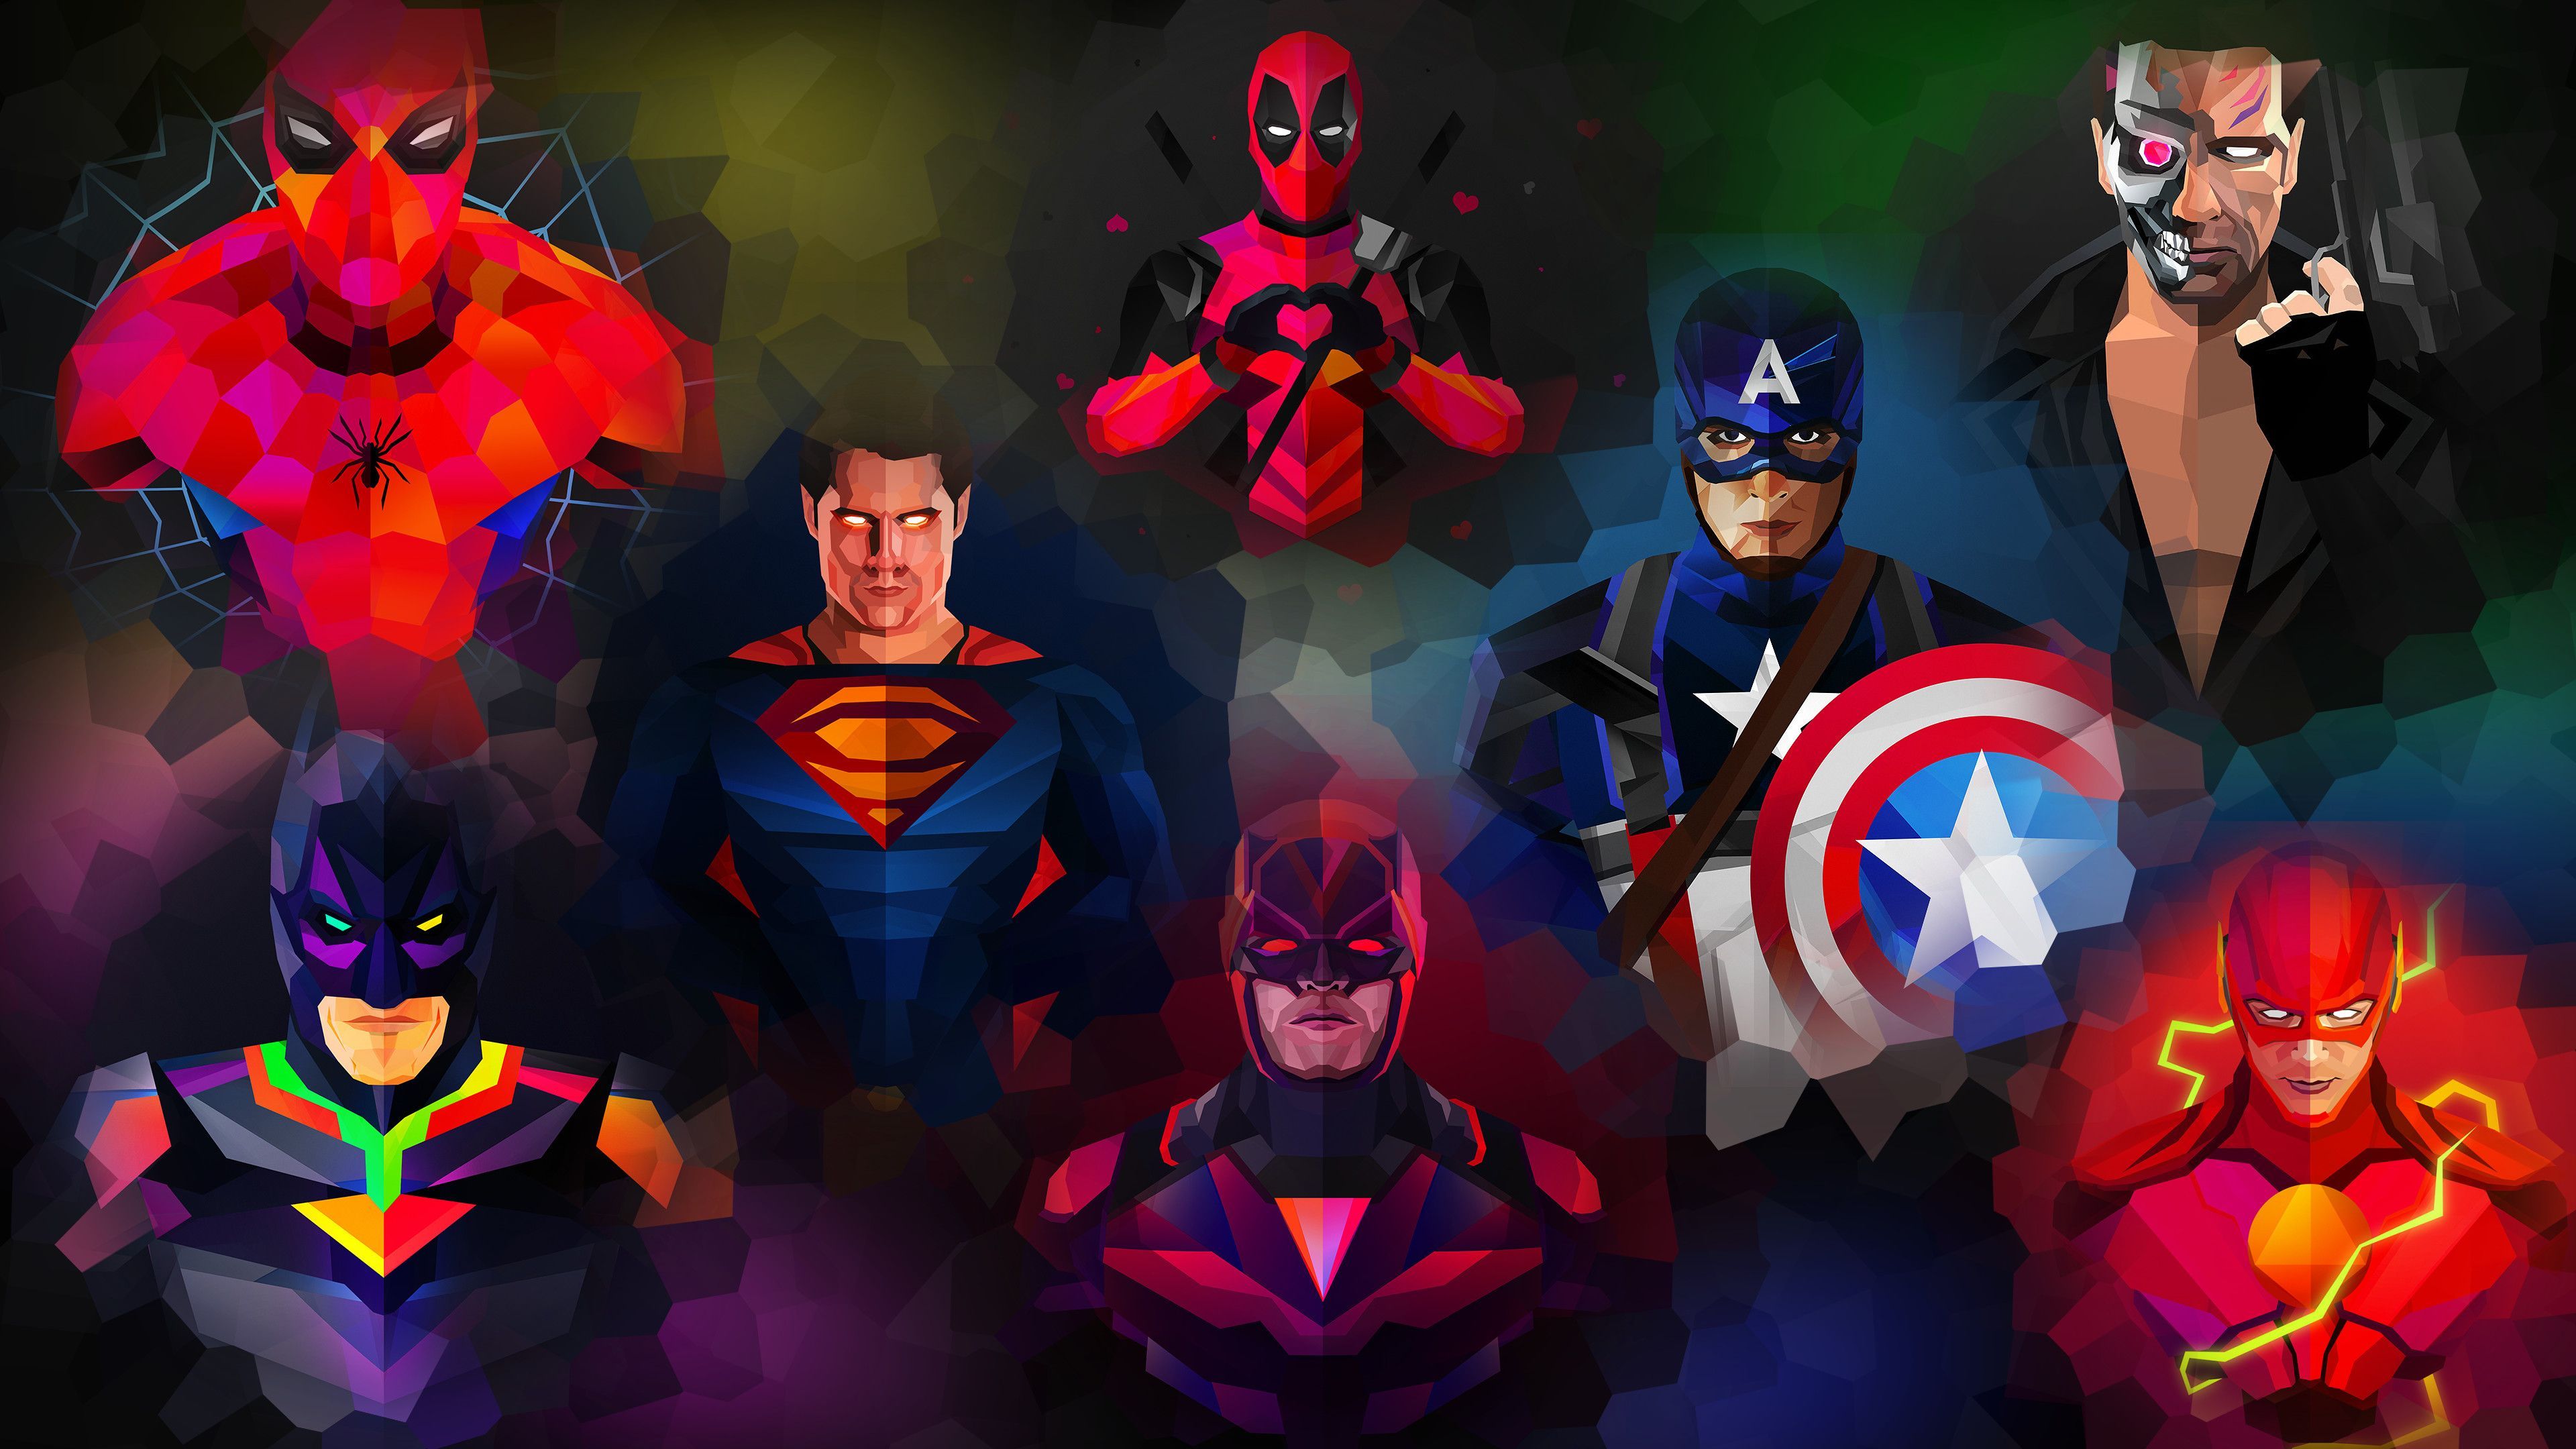 4K Superhero Wallpapers - Los mejores fondos de 4K Superhero gratis